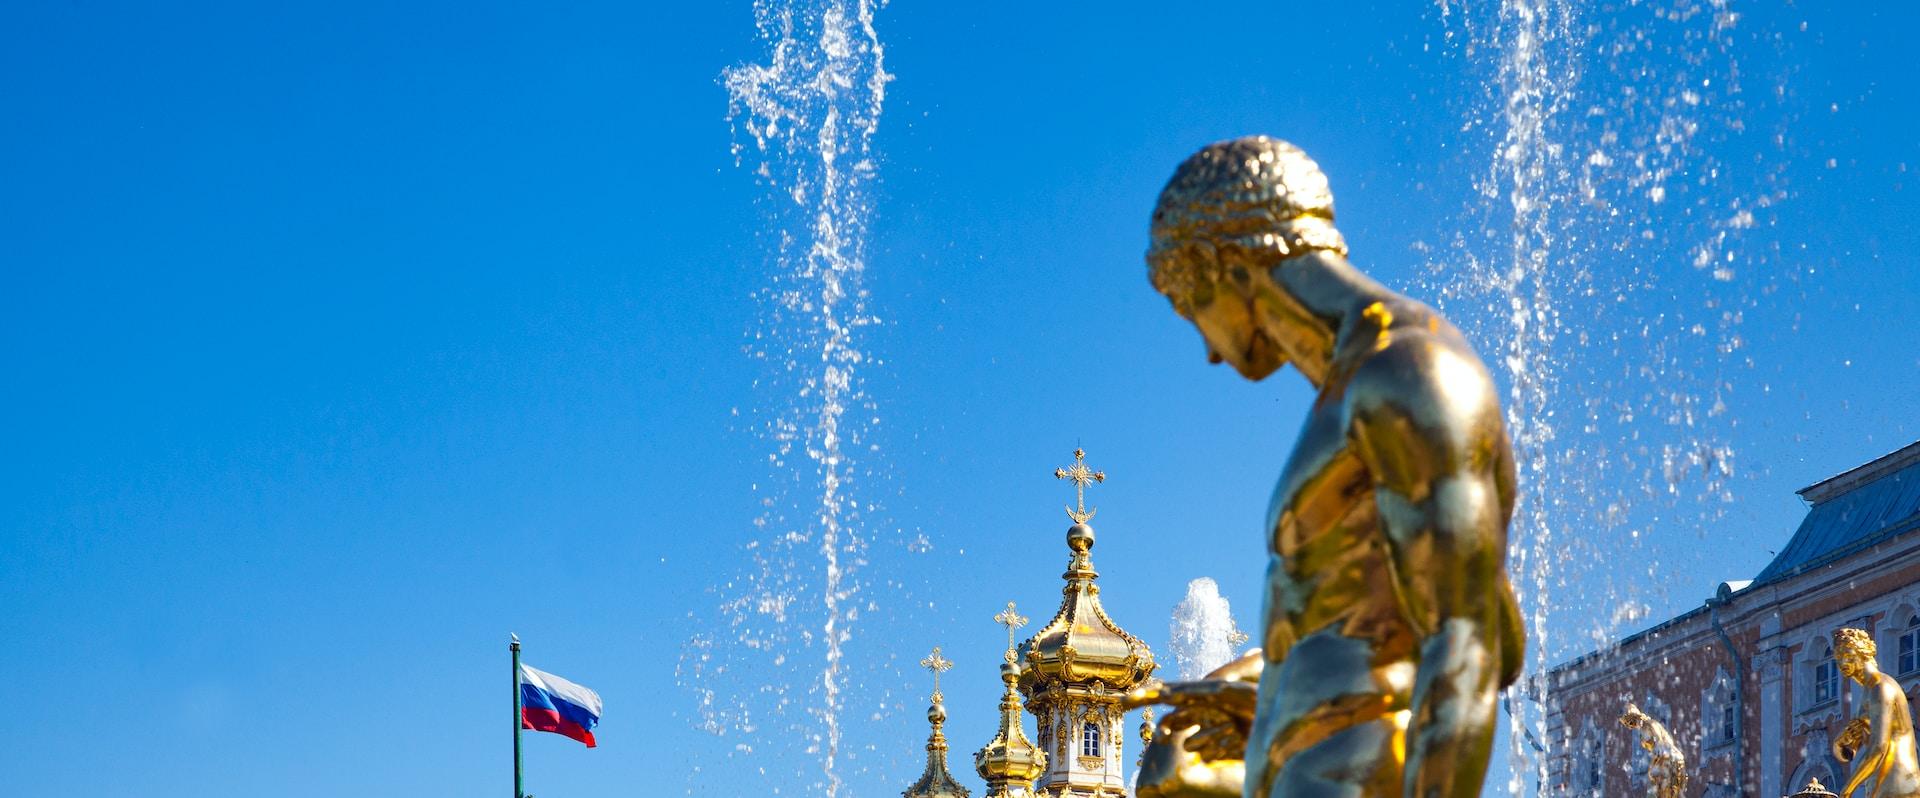 Большая десятичасовая экскурсия «Петергоф максимум: Большой дворец, фонтаны, малый дворец» со скидкой 35%